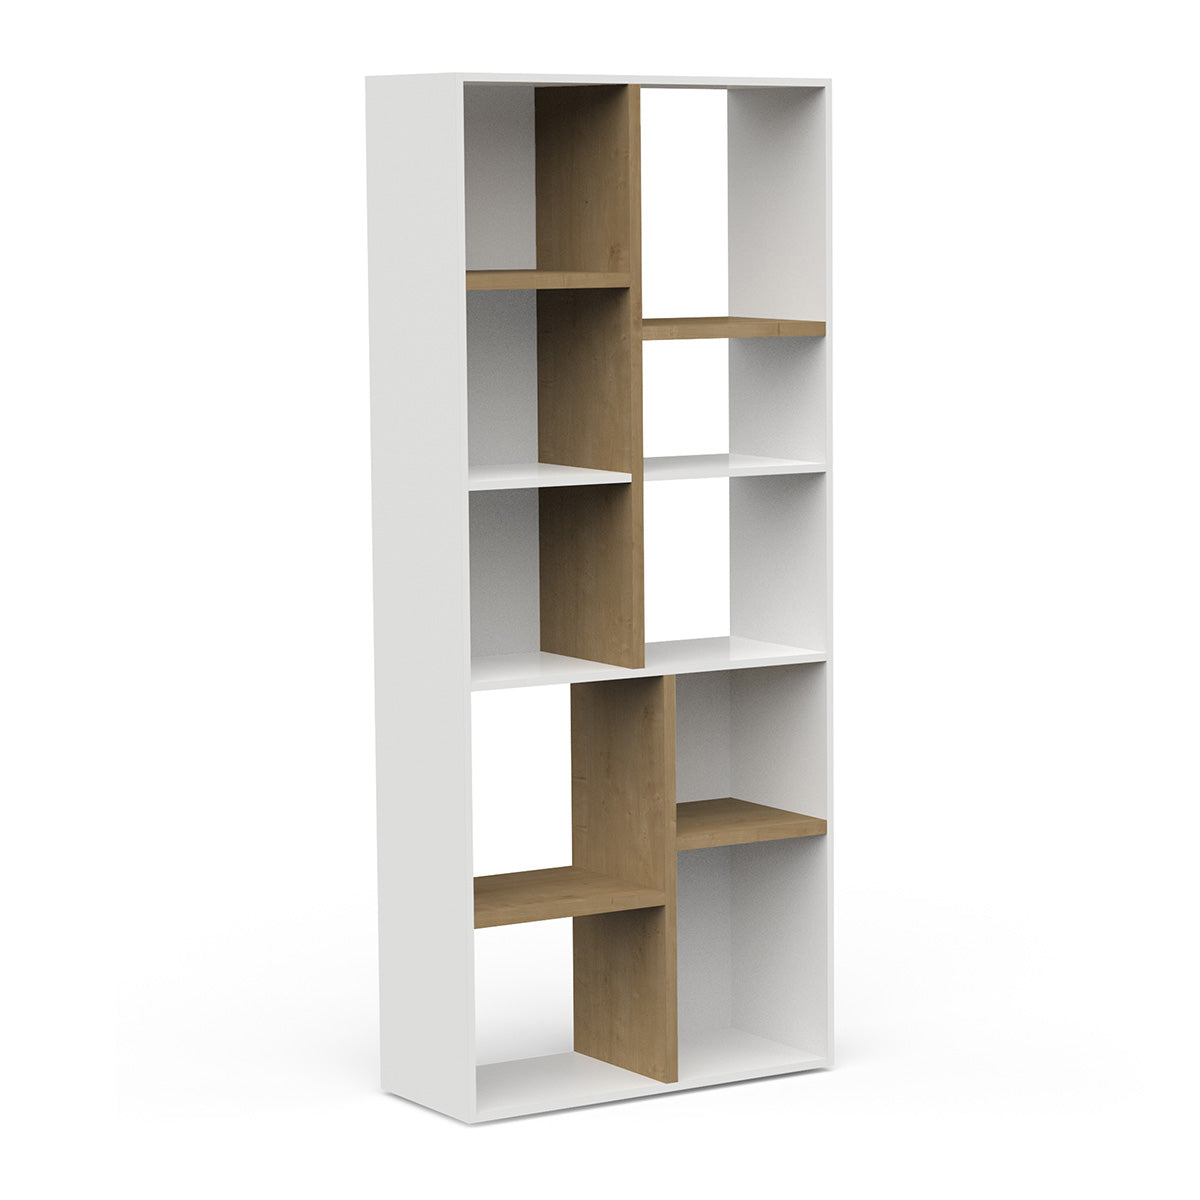 Moderne boekenkast met een witte afwerking en houten accenten. De kast heeft een open ontwerp met asymmetrische planken in een mix van wit en houtkleur, die zorgen voor een eigentijdse uitstraling.